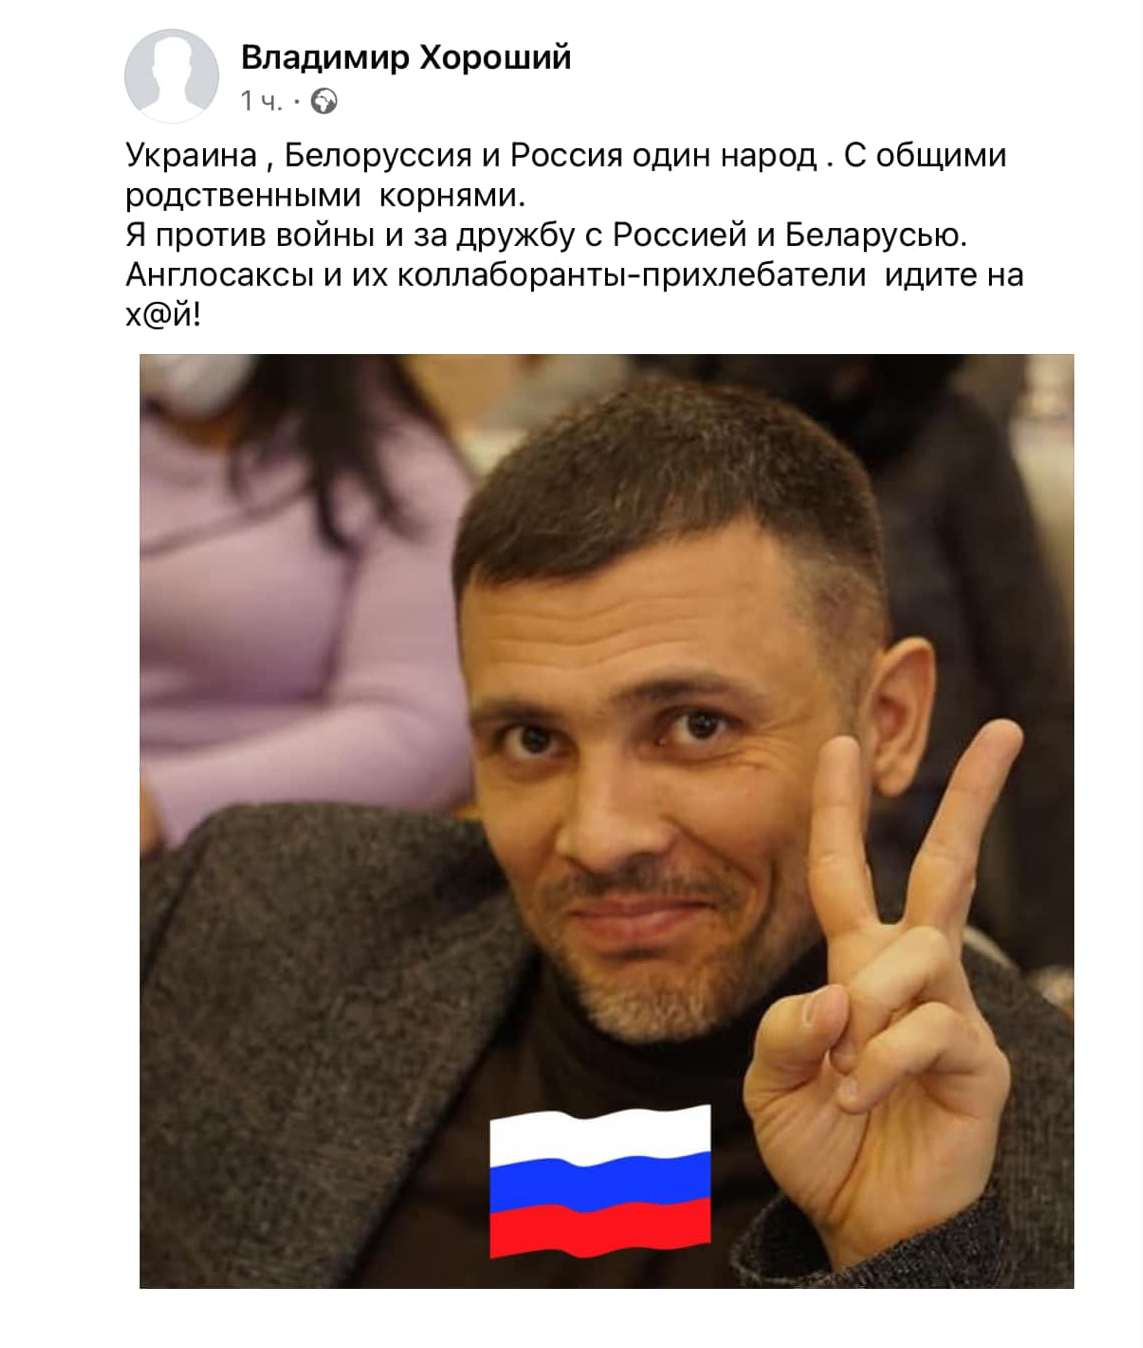 Депутат поставил себе на аватарку флаг России.